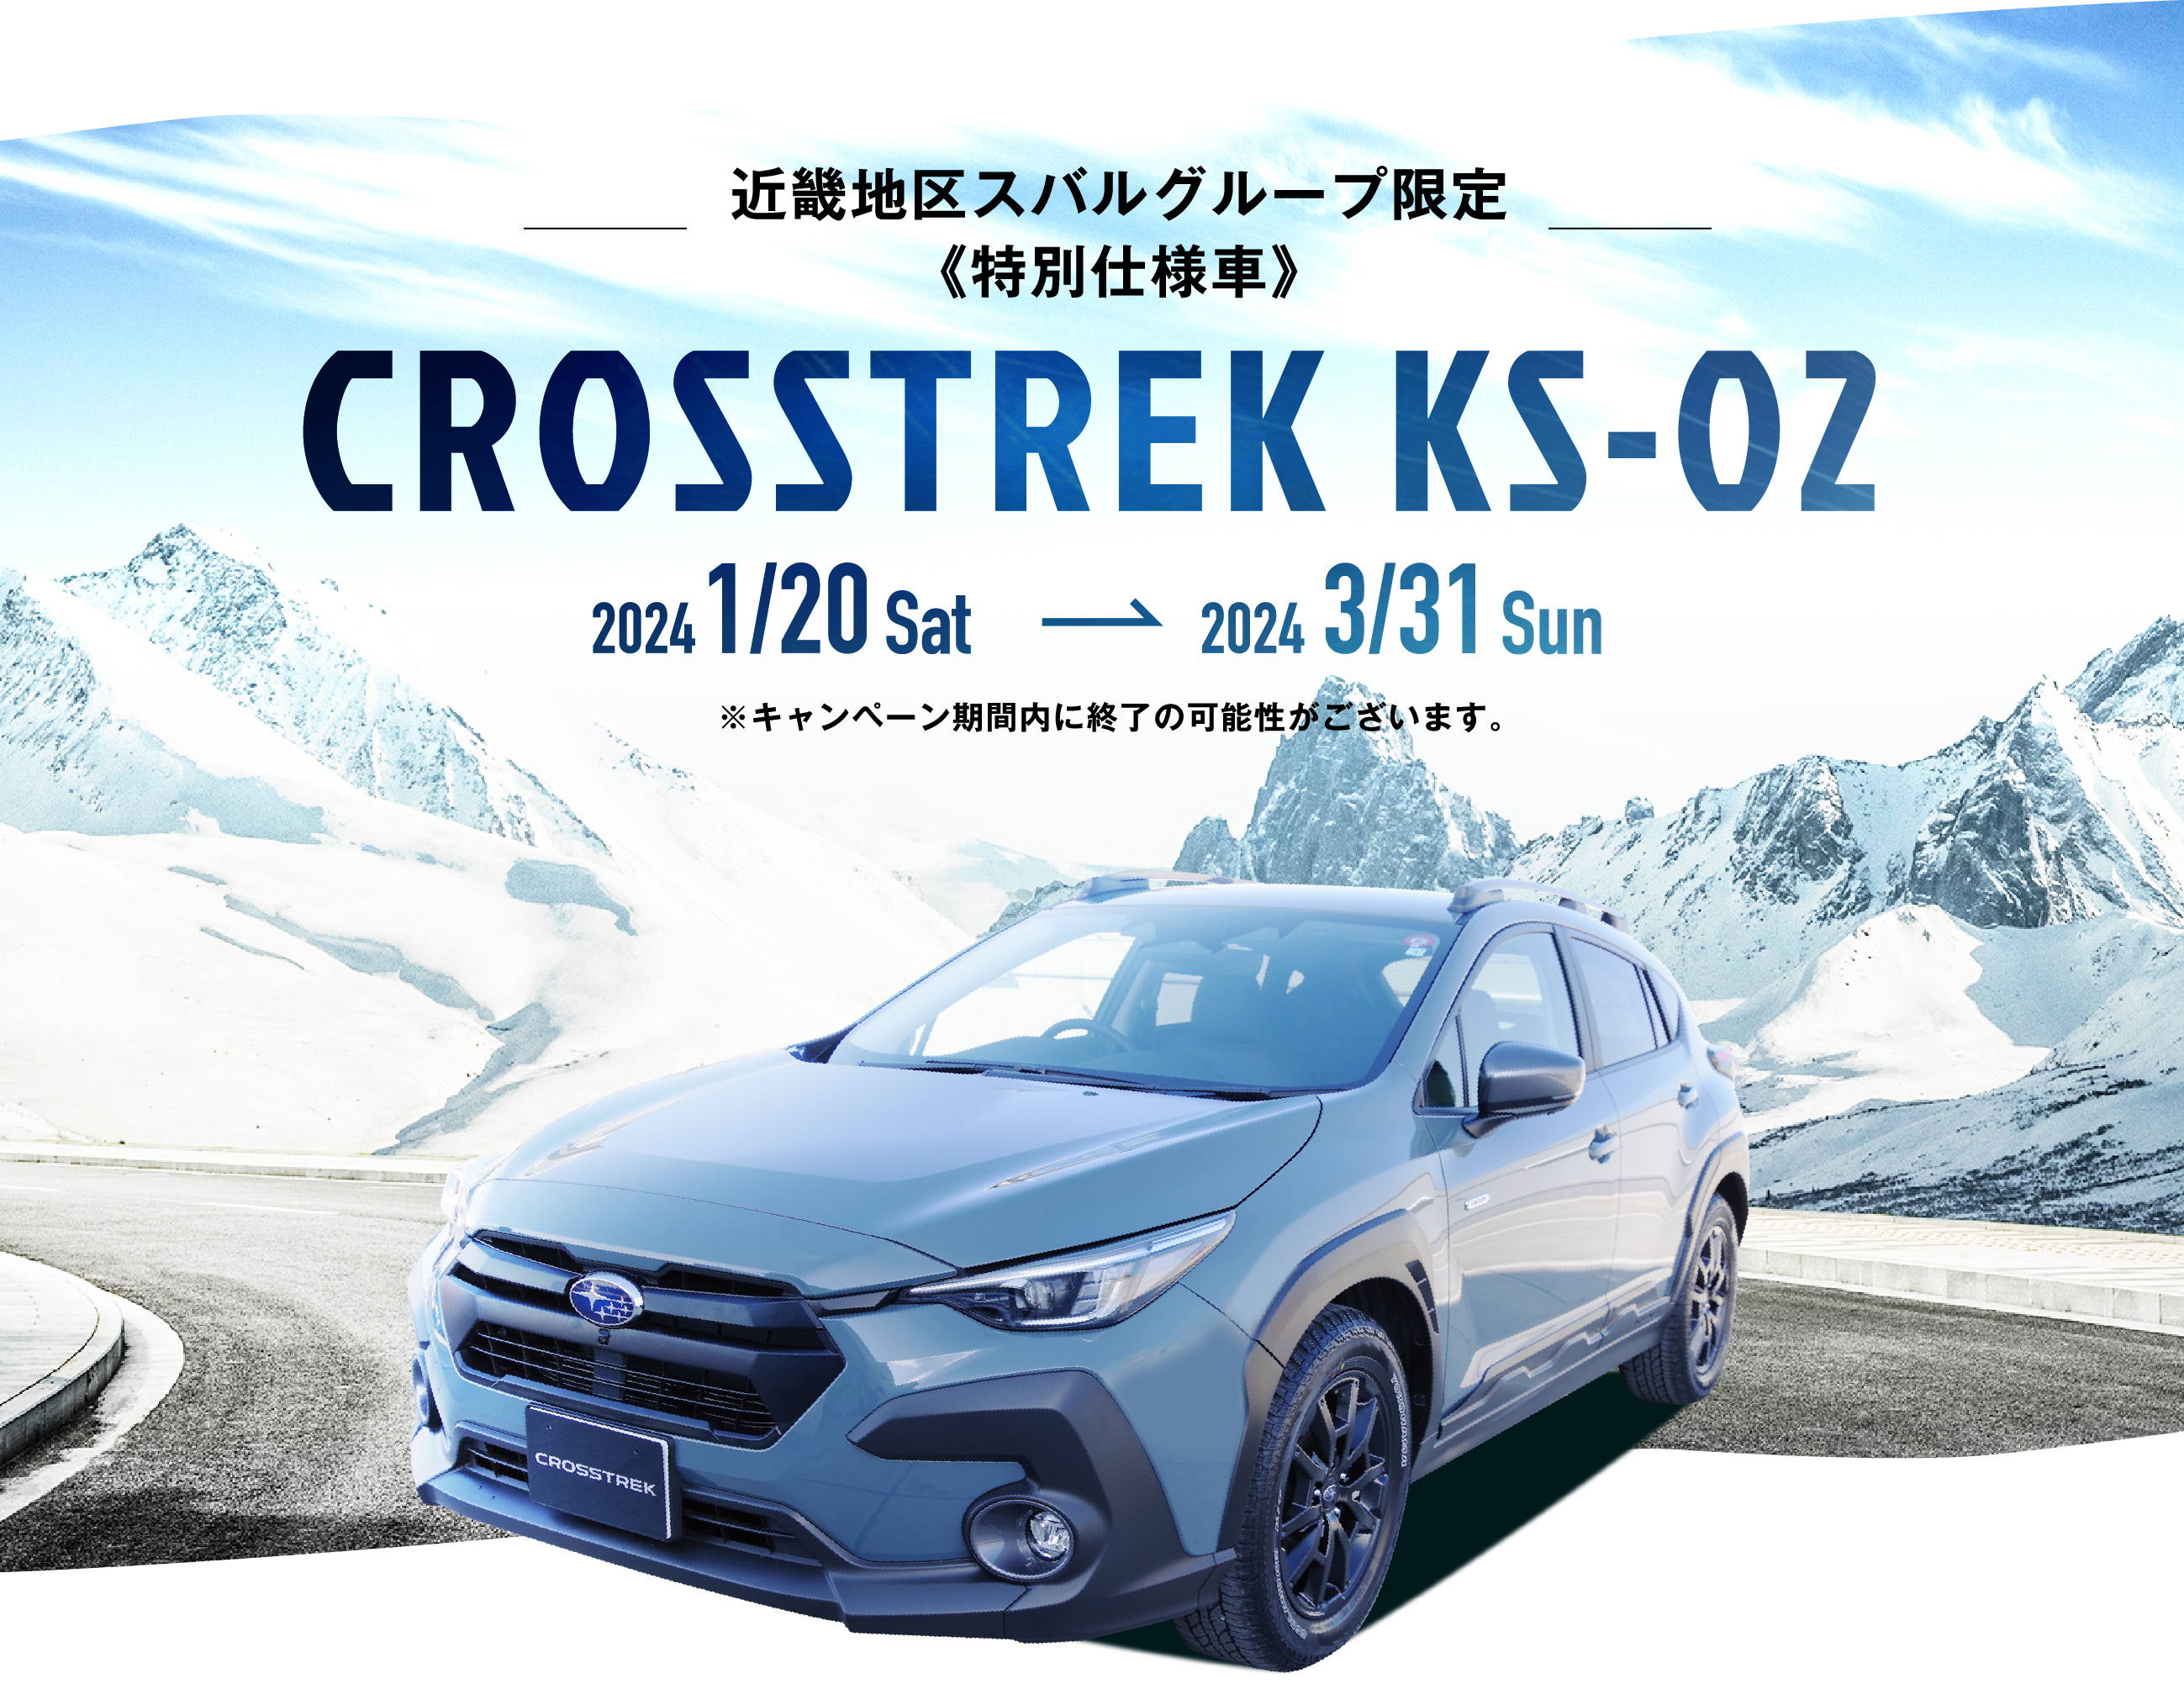 近畿地区スバルグループ限定《特別仕様車》CROSSTREK KS-02 2024/1/20〜2024/3/31 ※キャンペーン期間内に終了の可能性がございます。